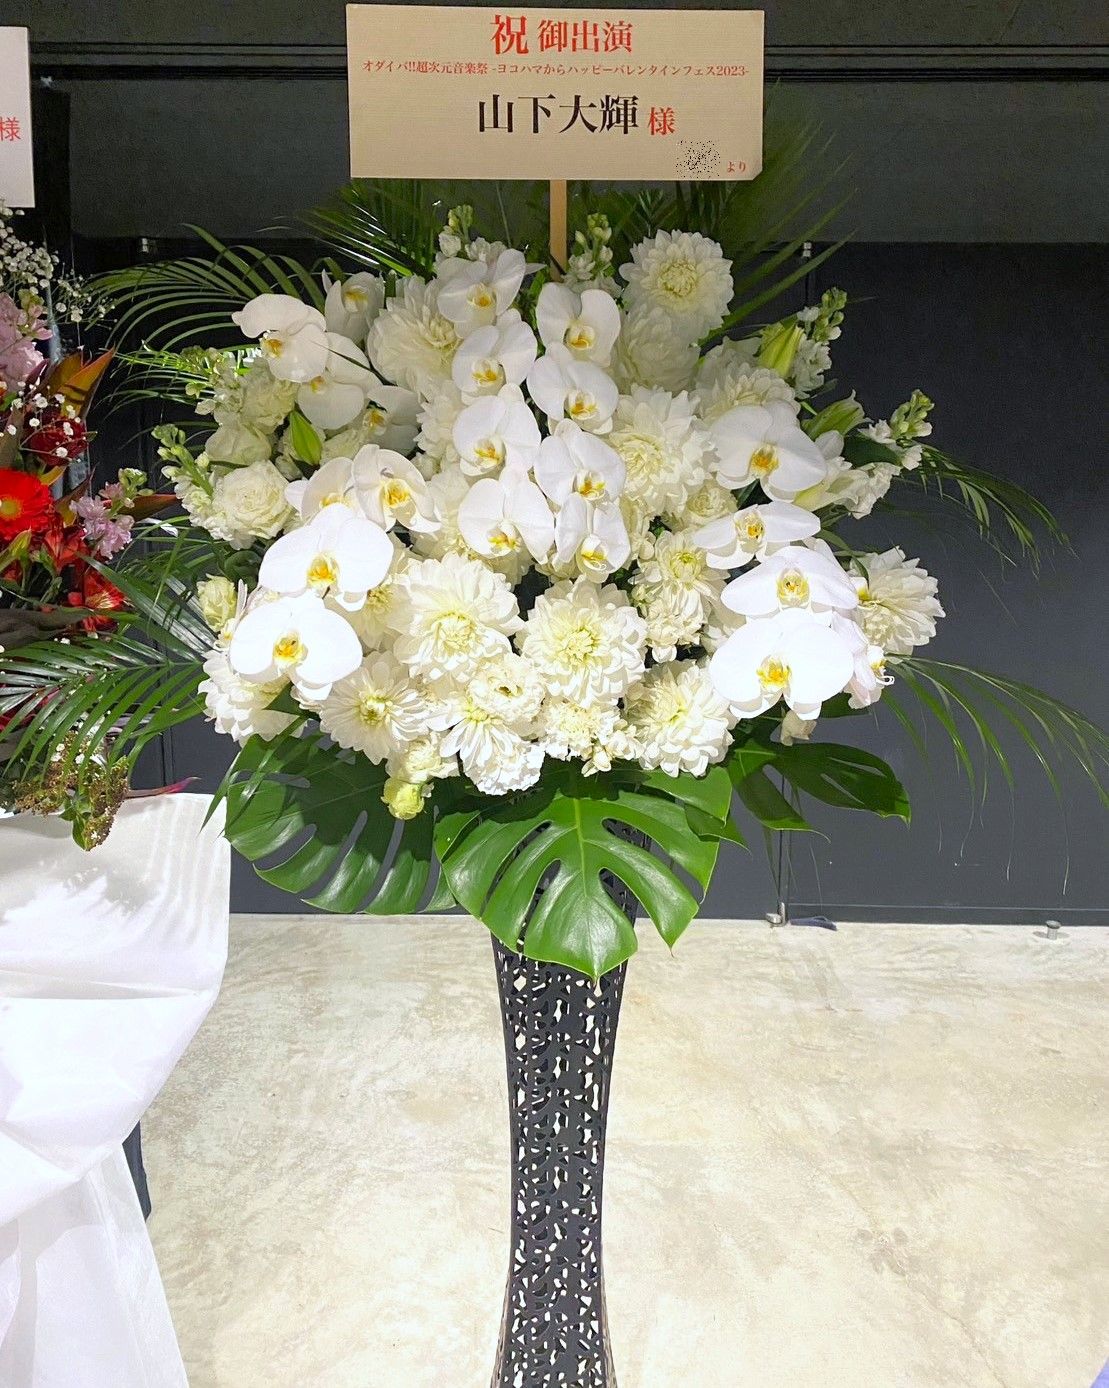 横浜市みなとみらいへ胡蝶蘭入り白系スタンド花を配達しました。【横浜花屋の花束・スタンド花・胡蝶蘭・バルーン・アレンジメント配達事例1110】